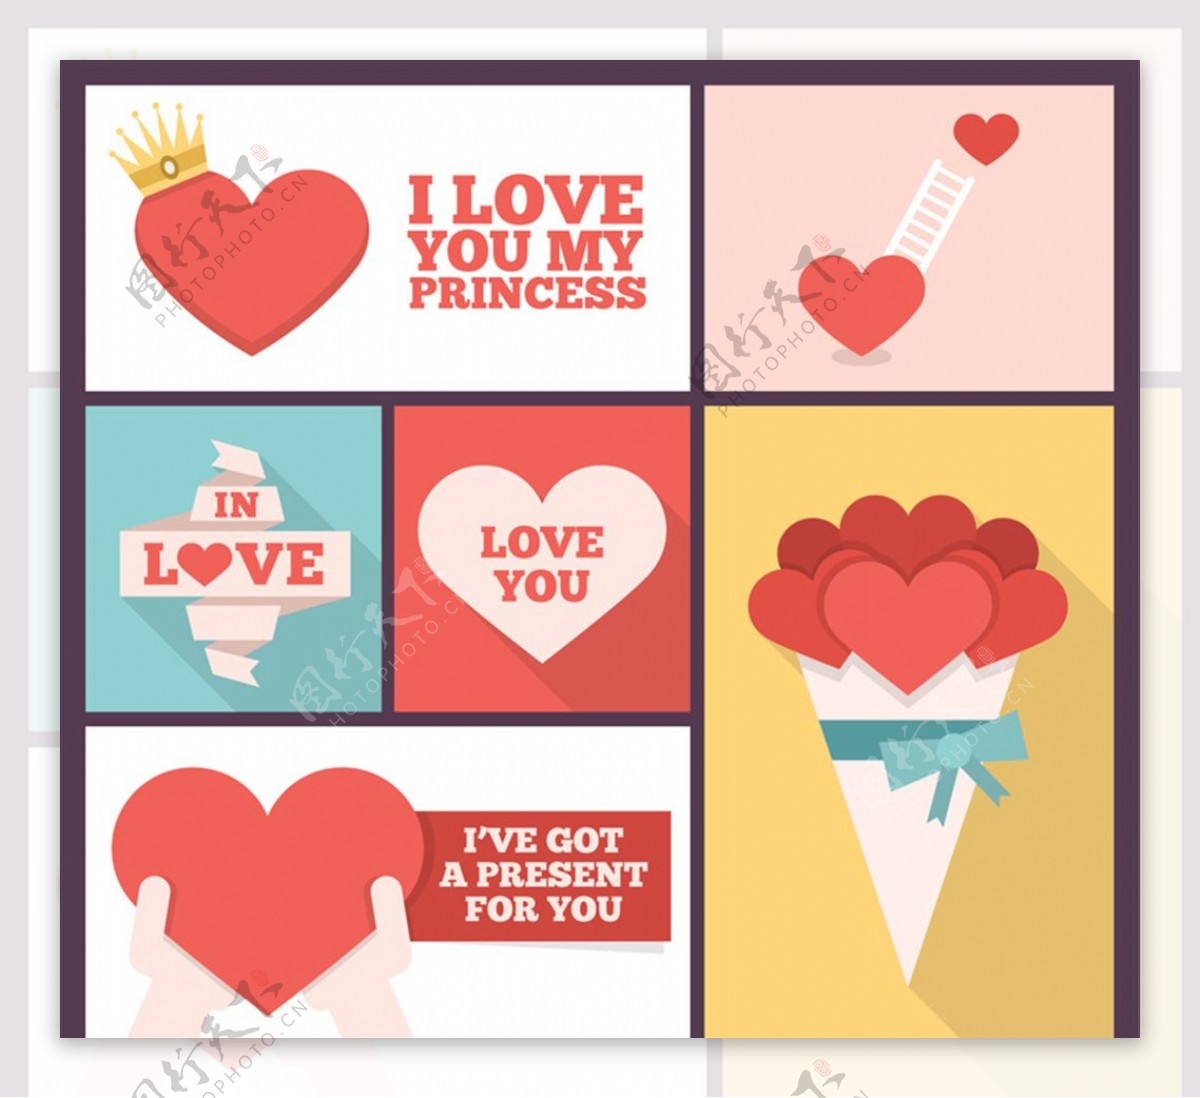 6款创意爱心组合卡片矢量素材